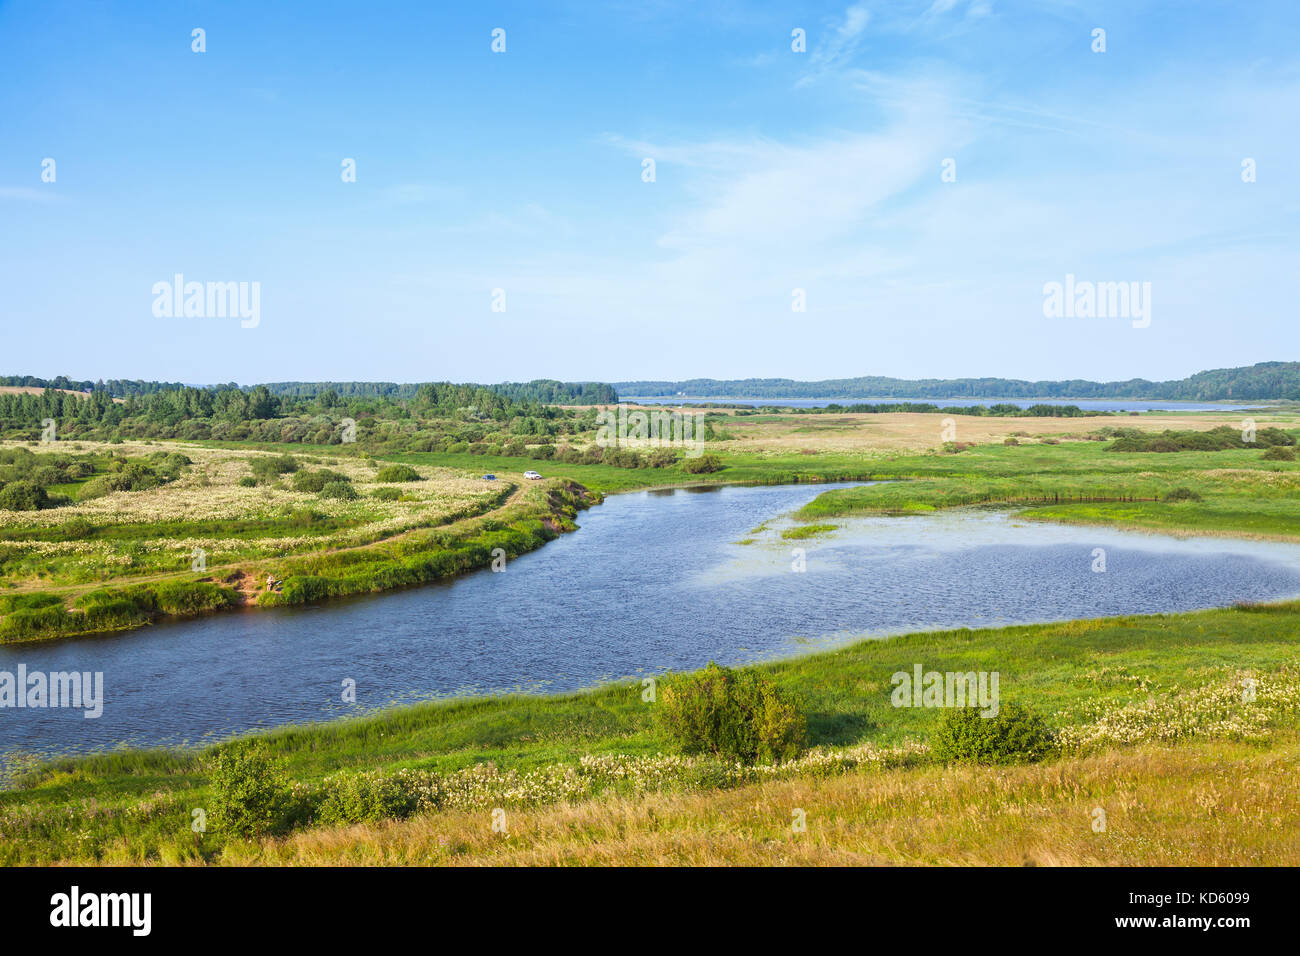 Rural vide. paysage russe sous la rivière sorot blue cloudy sky dans la journée d'été Banque D'Images